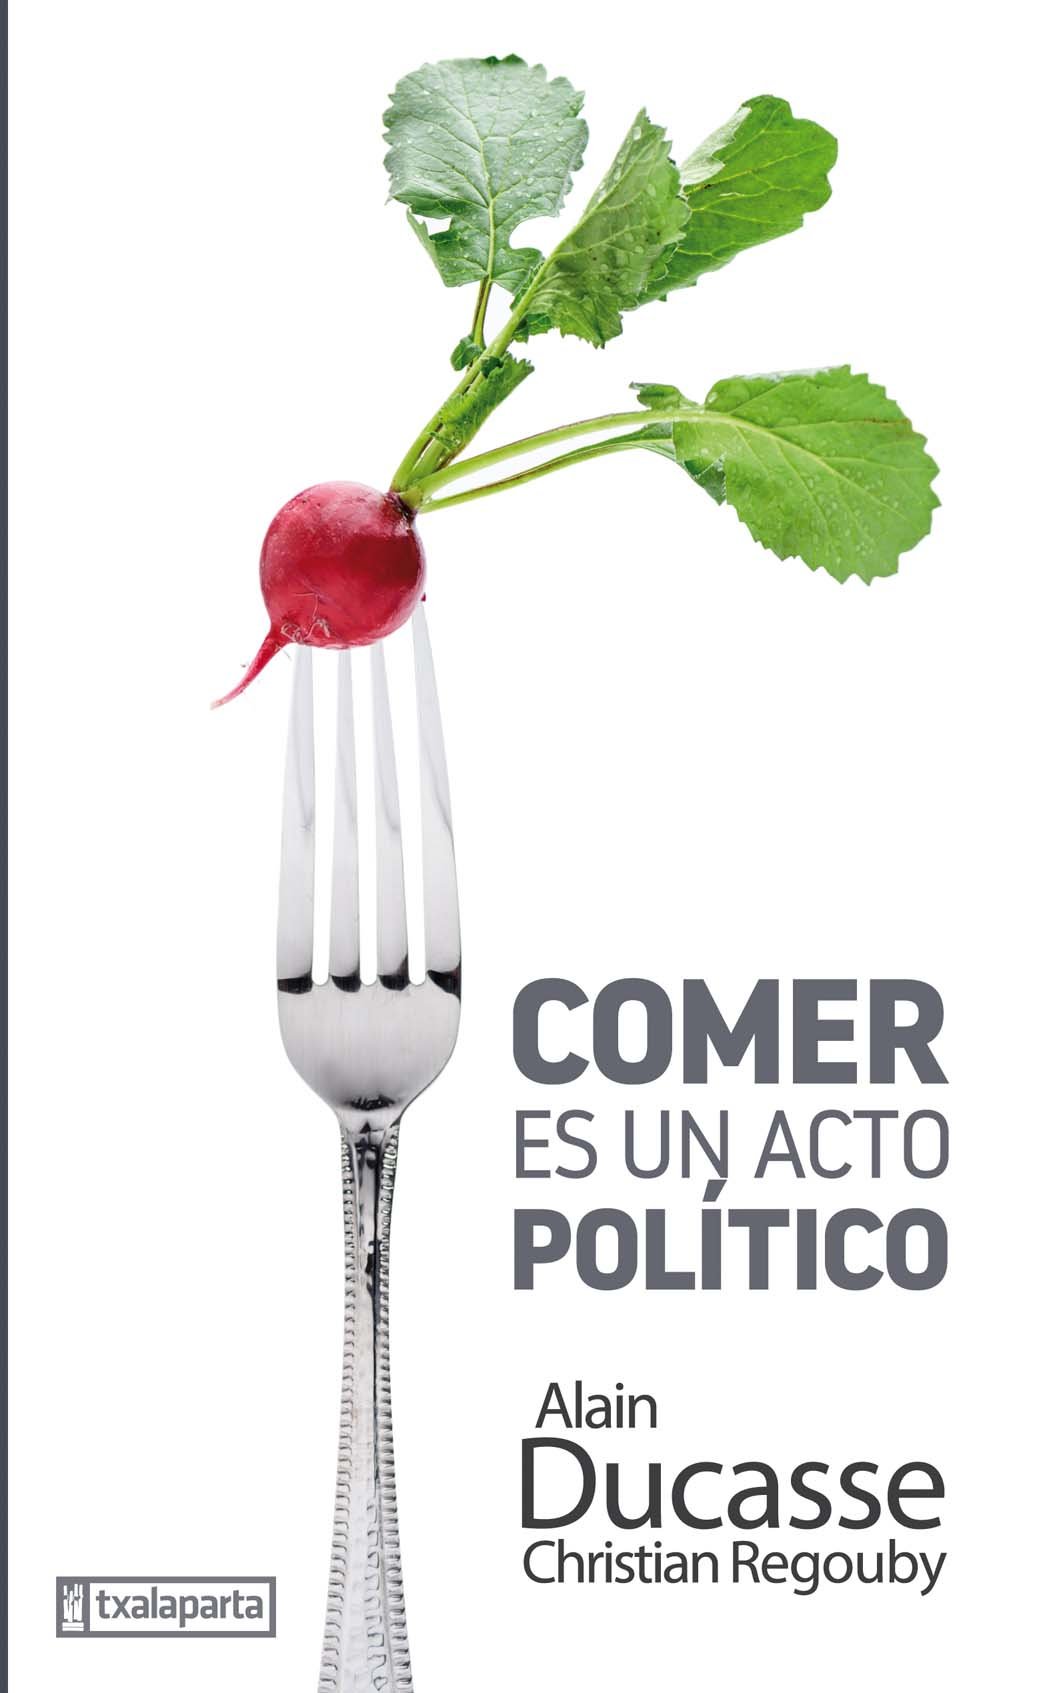 Alain Ducasse, 'Comer es un acto político'. Txalaparta, 157 p., 16,50€.